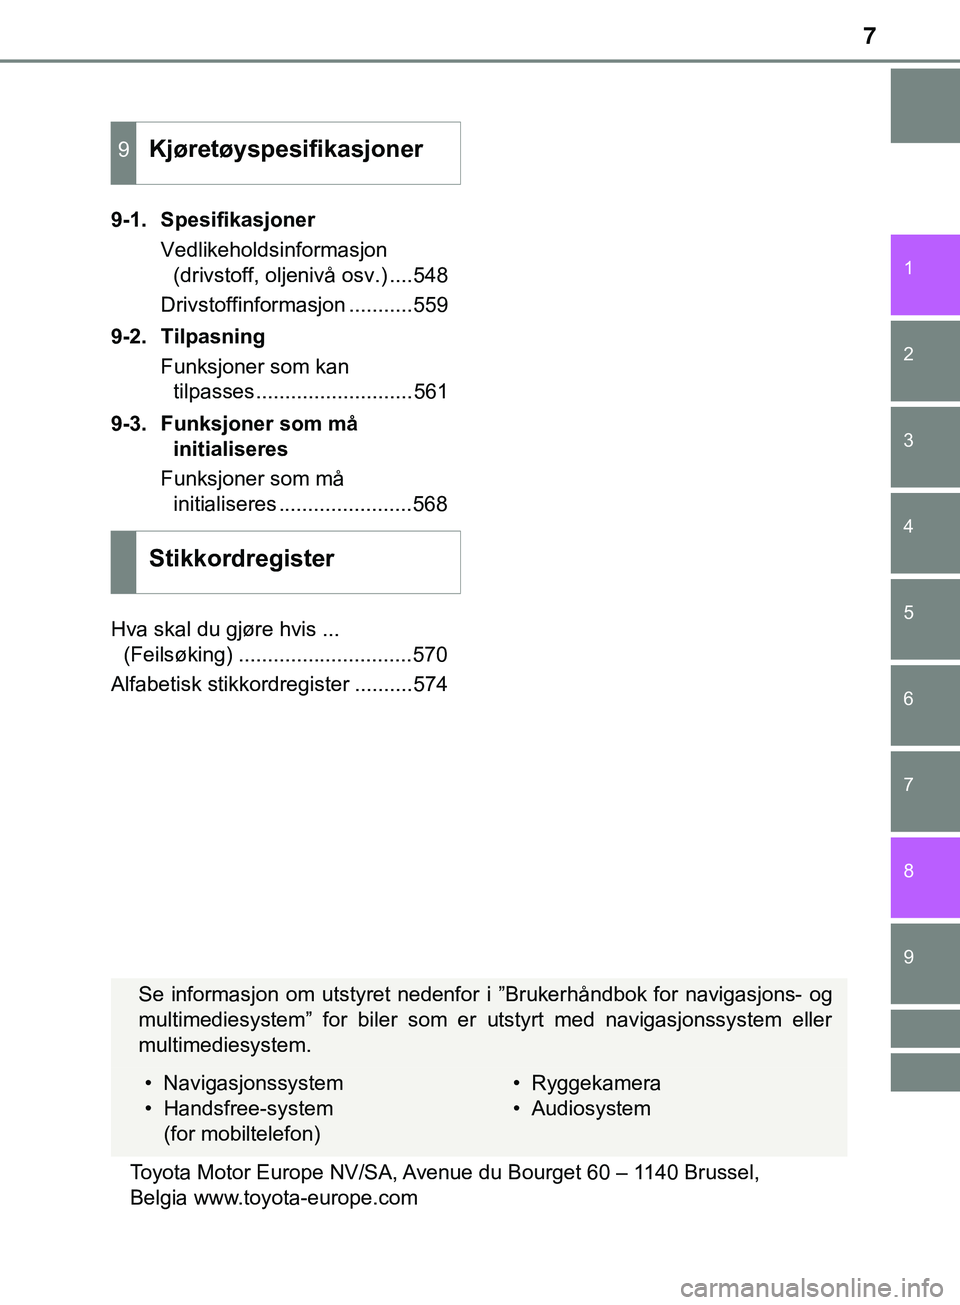 TOYOTA YARIS HATCHBACK 2018  Instruksjoner for bruk (in Norwegian) 7
1
7
8 6 5
4
3
2
9
YARIS_HV_OM_Europe_OM52C96NO9-1. Spesifikasjoner
Vedlikeholdsinformasjon(drivstoff, oljenivå osv.) ....548
Drivstoffinformasjon ...........559
9-2. Tilpasning Funksjoner som kan t